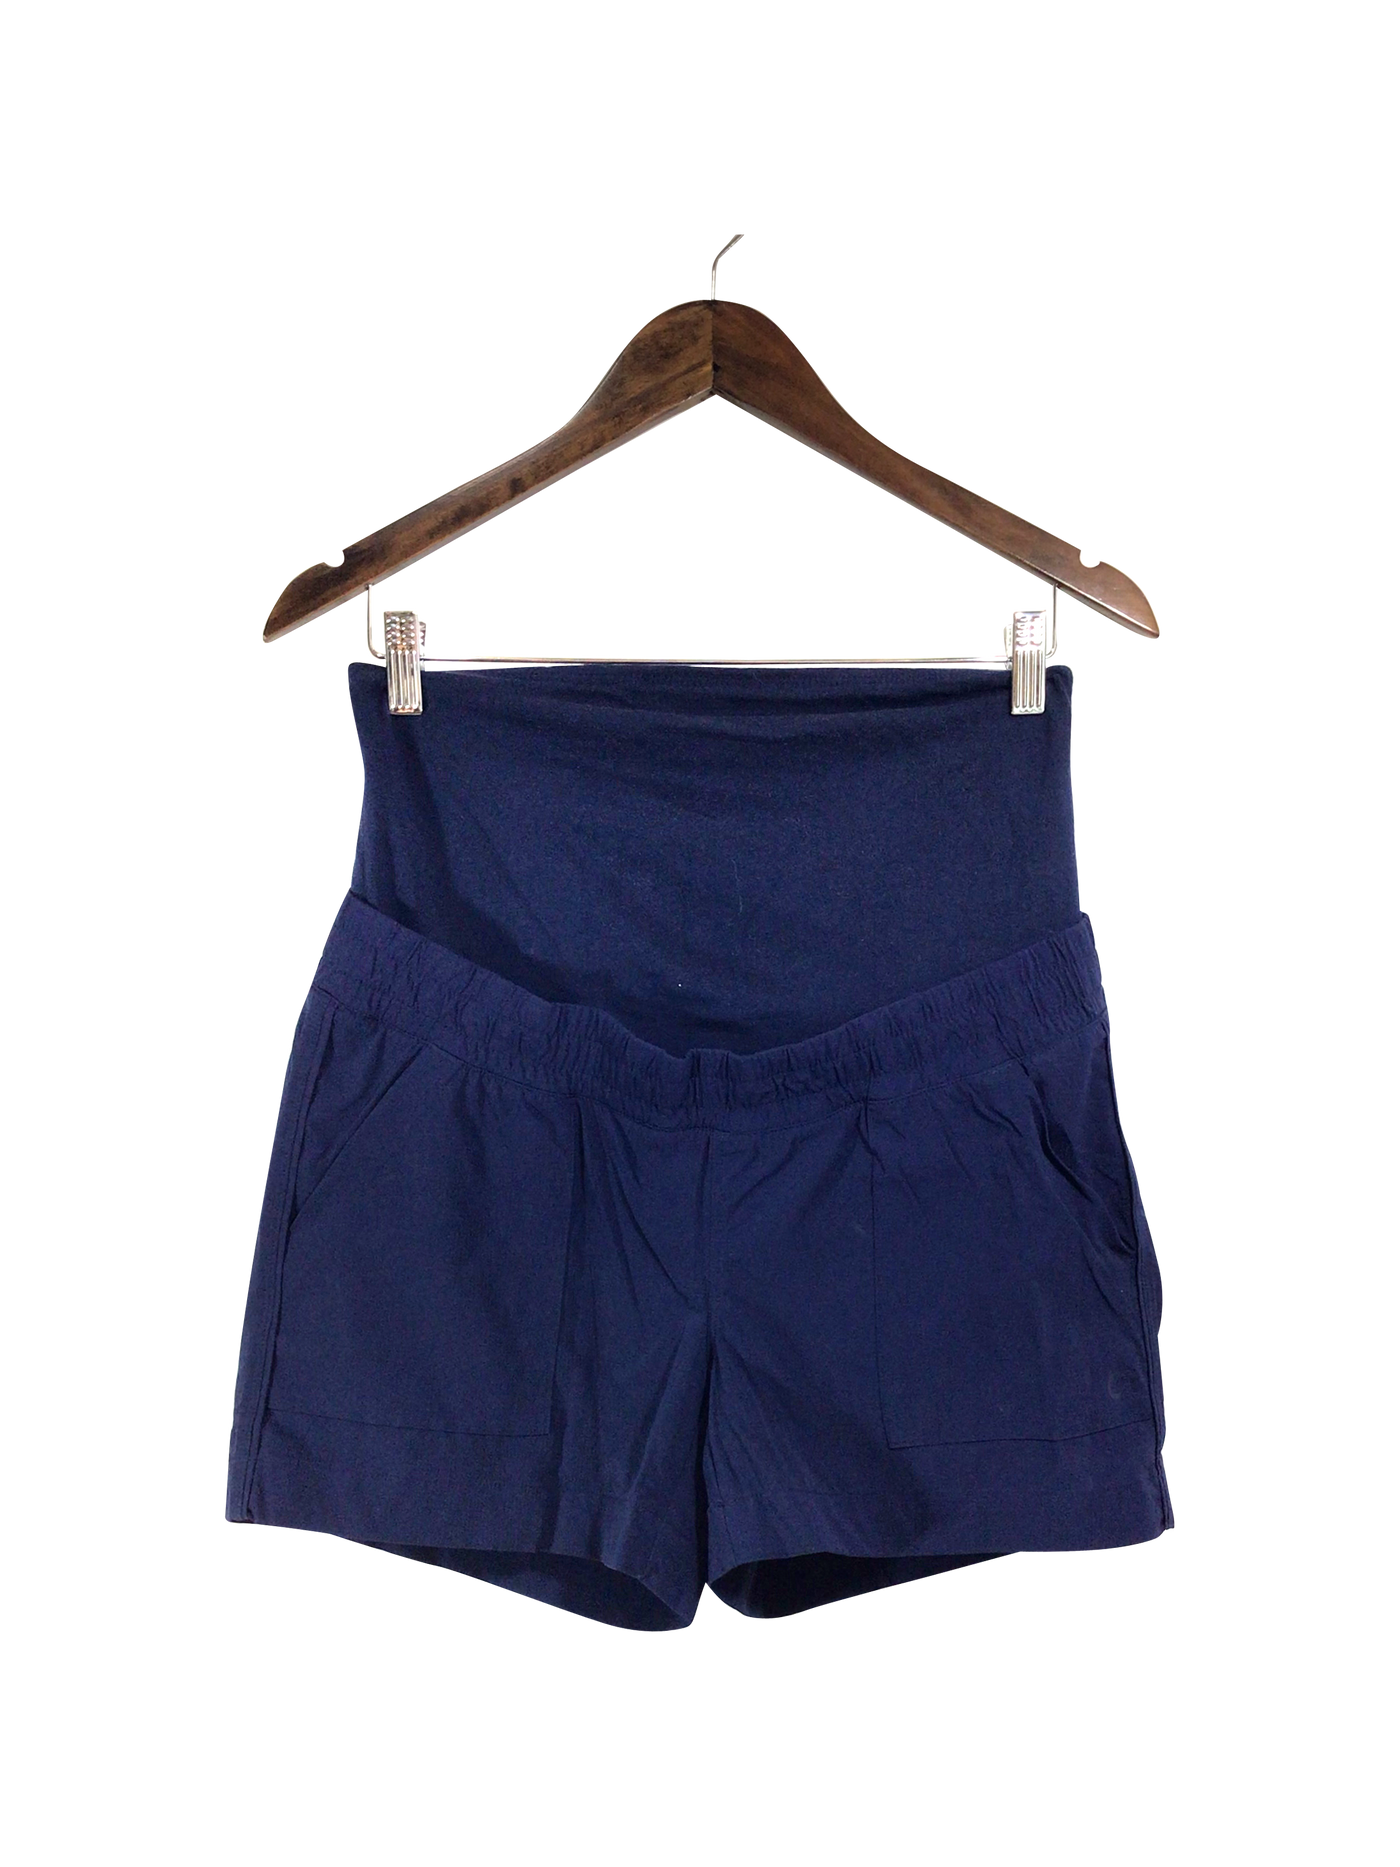 GAP Activewear Short Regular fit in Blue - Size XS | 14.35 $ KOOP